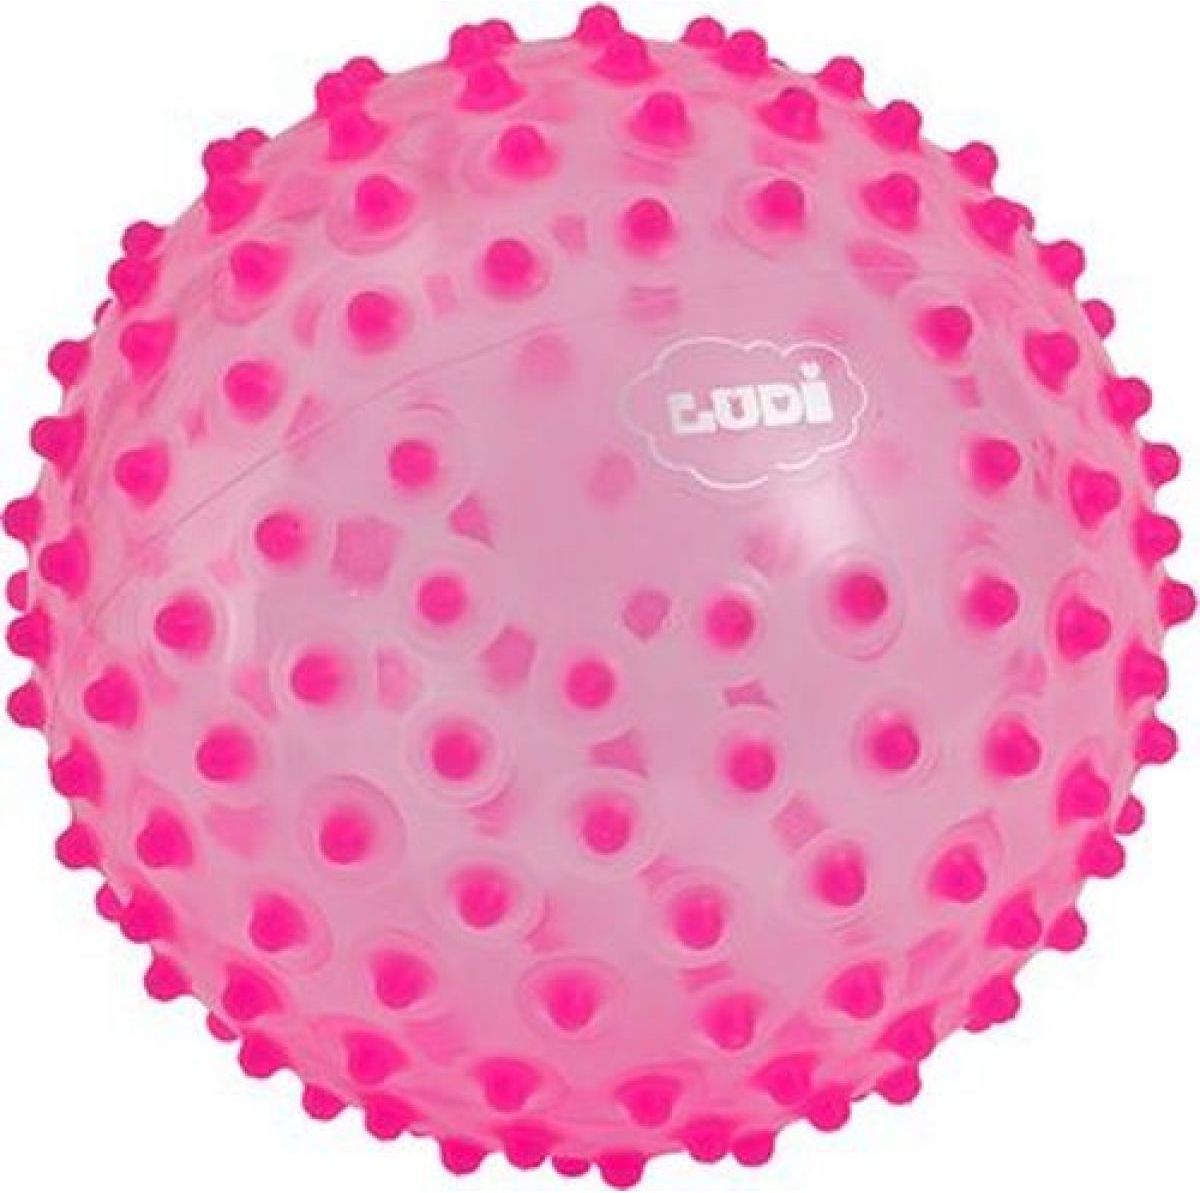 Ludi 2795ROLU- Senzorický míček růžový - obrázek 1